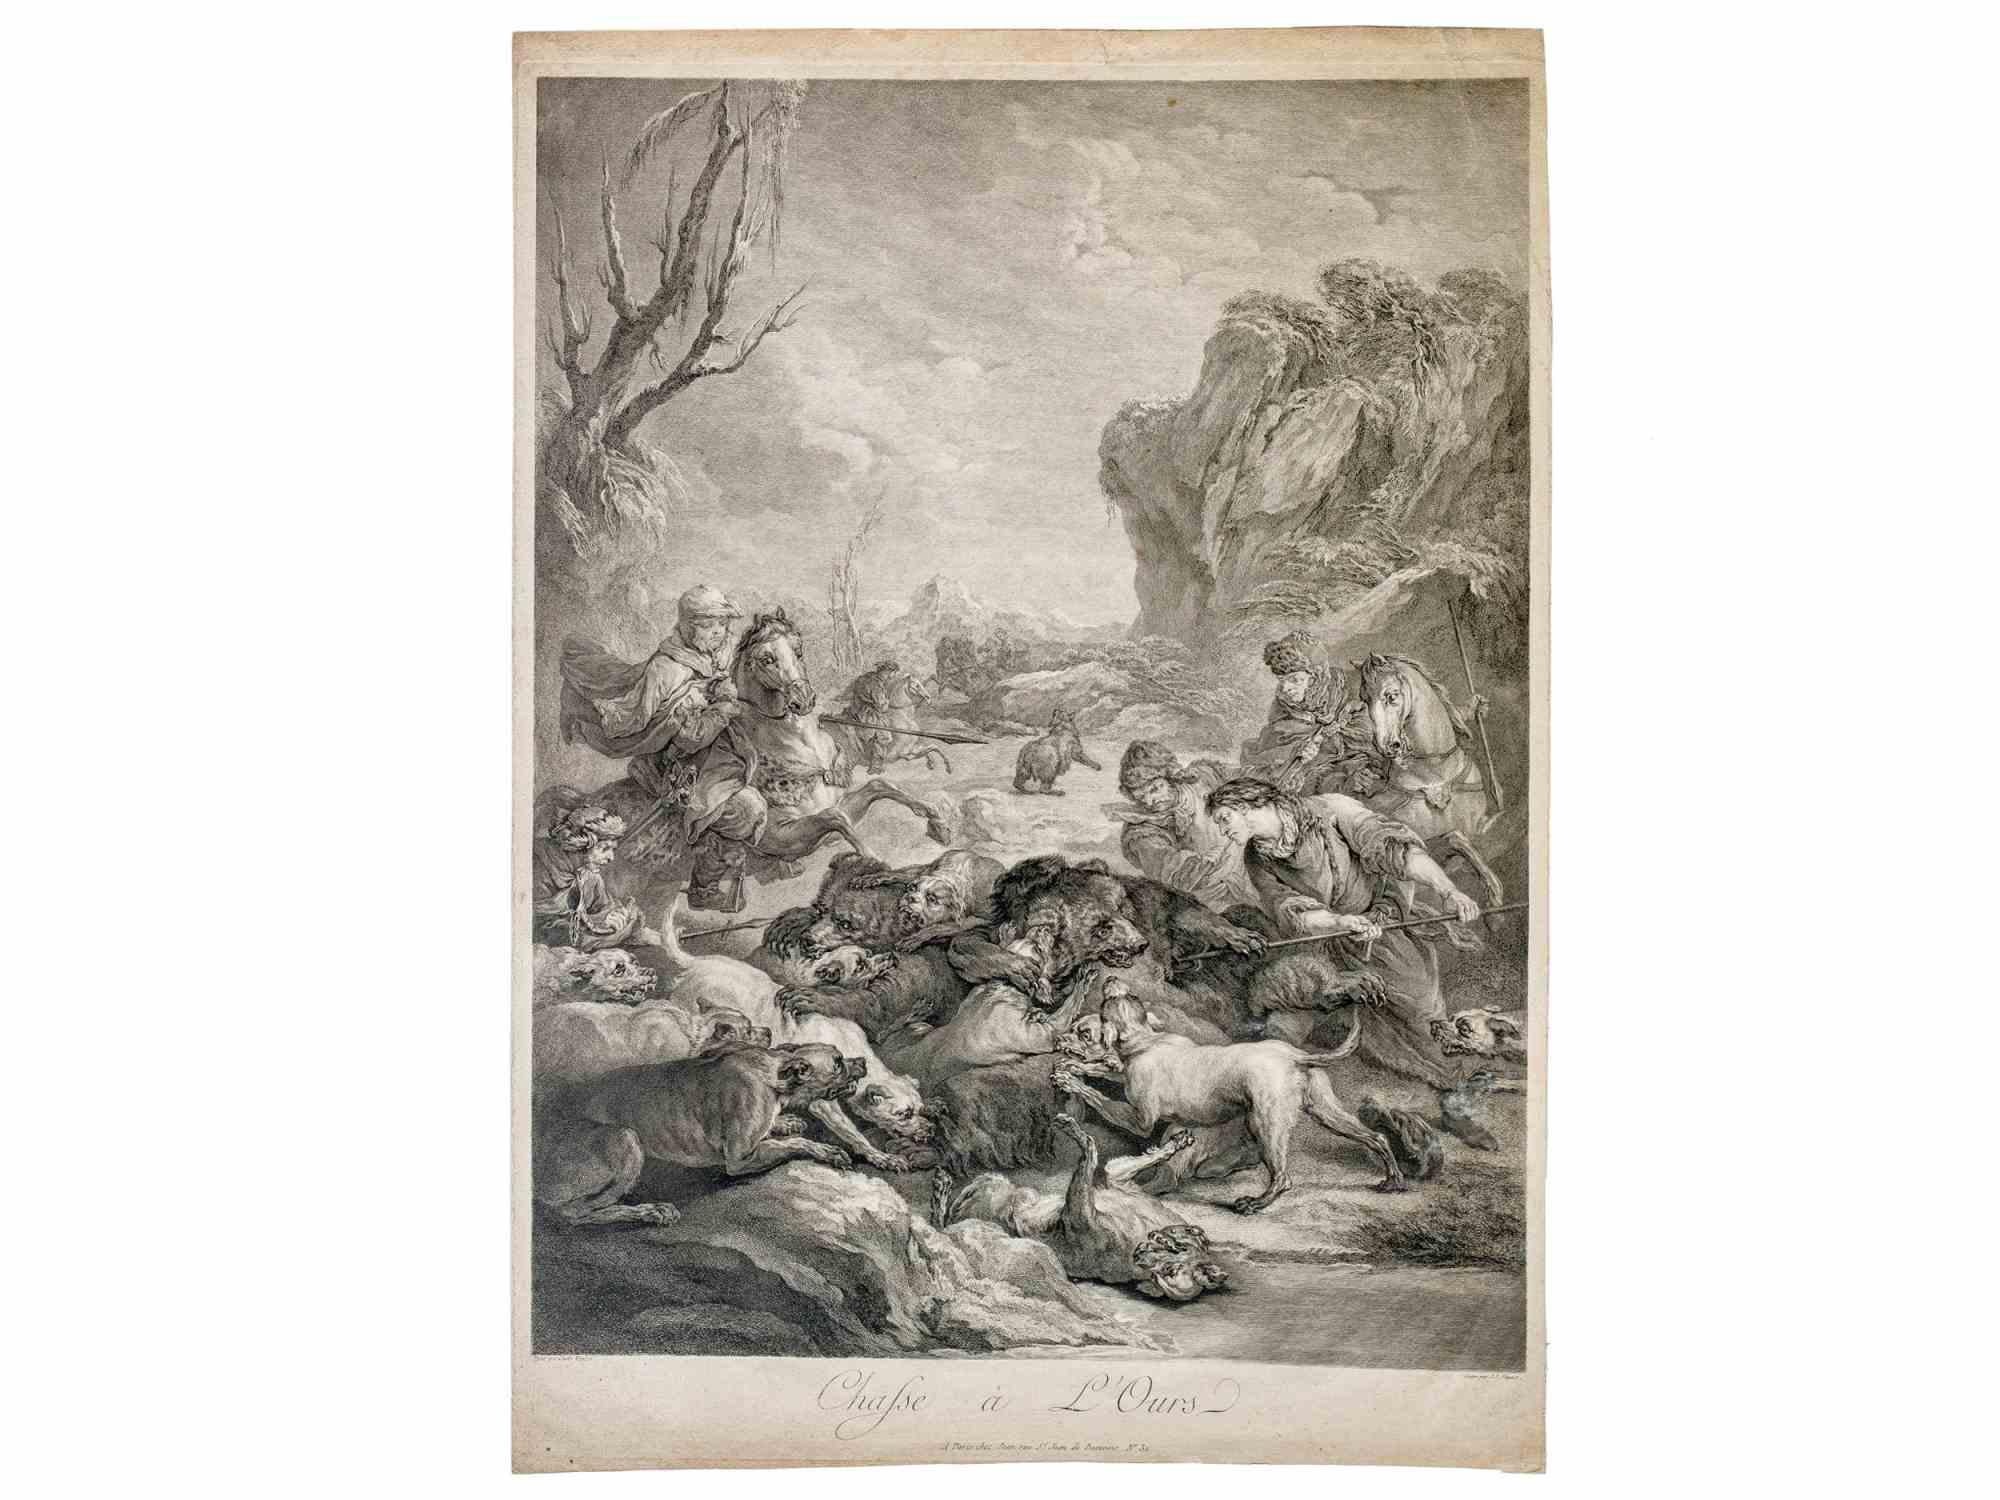 La chasse à l'ours est une œuvre d'art ancienne réalisée par Jean Jaques Flipart (1709 - 1782) à la fin du 18e siècle.

Dimensions de la feuille 37,5 x 52 cm

Titre imprimé sur la plaque.